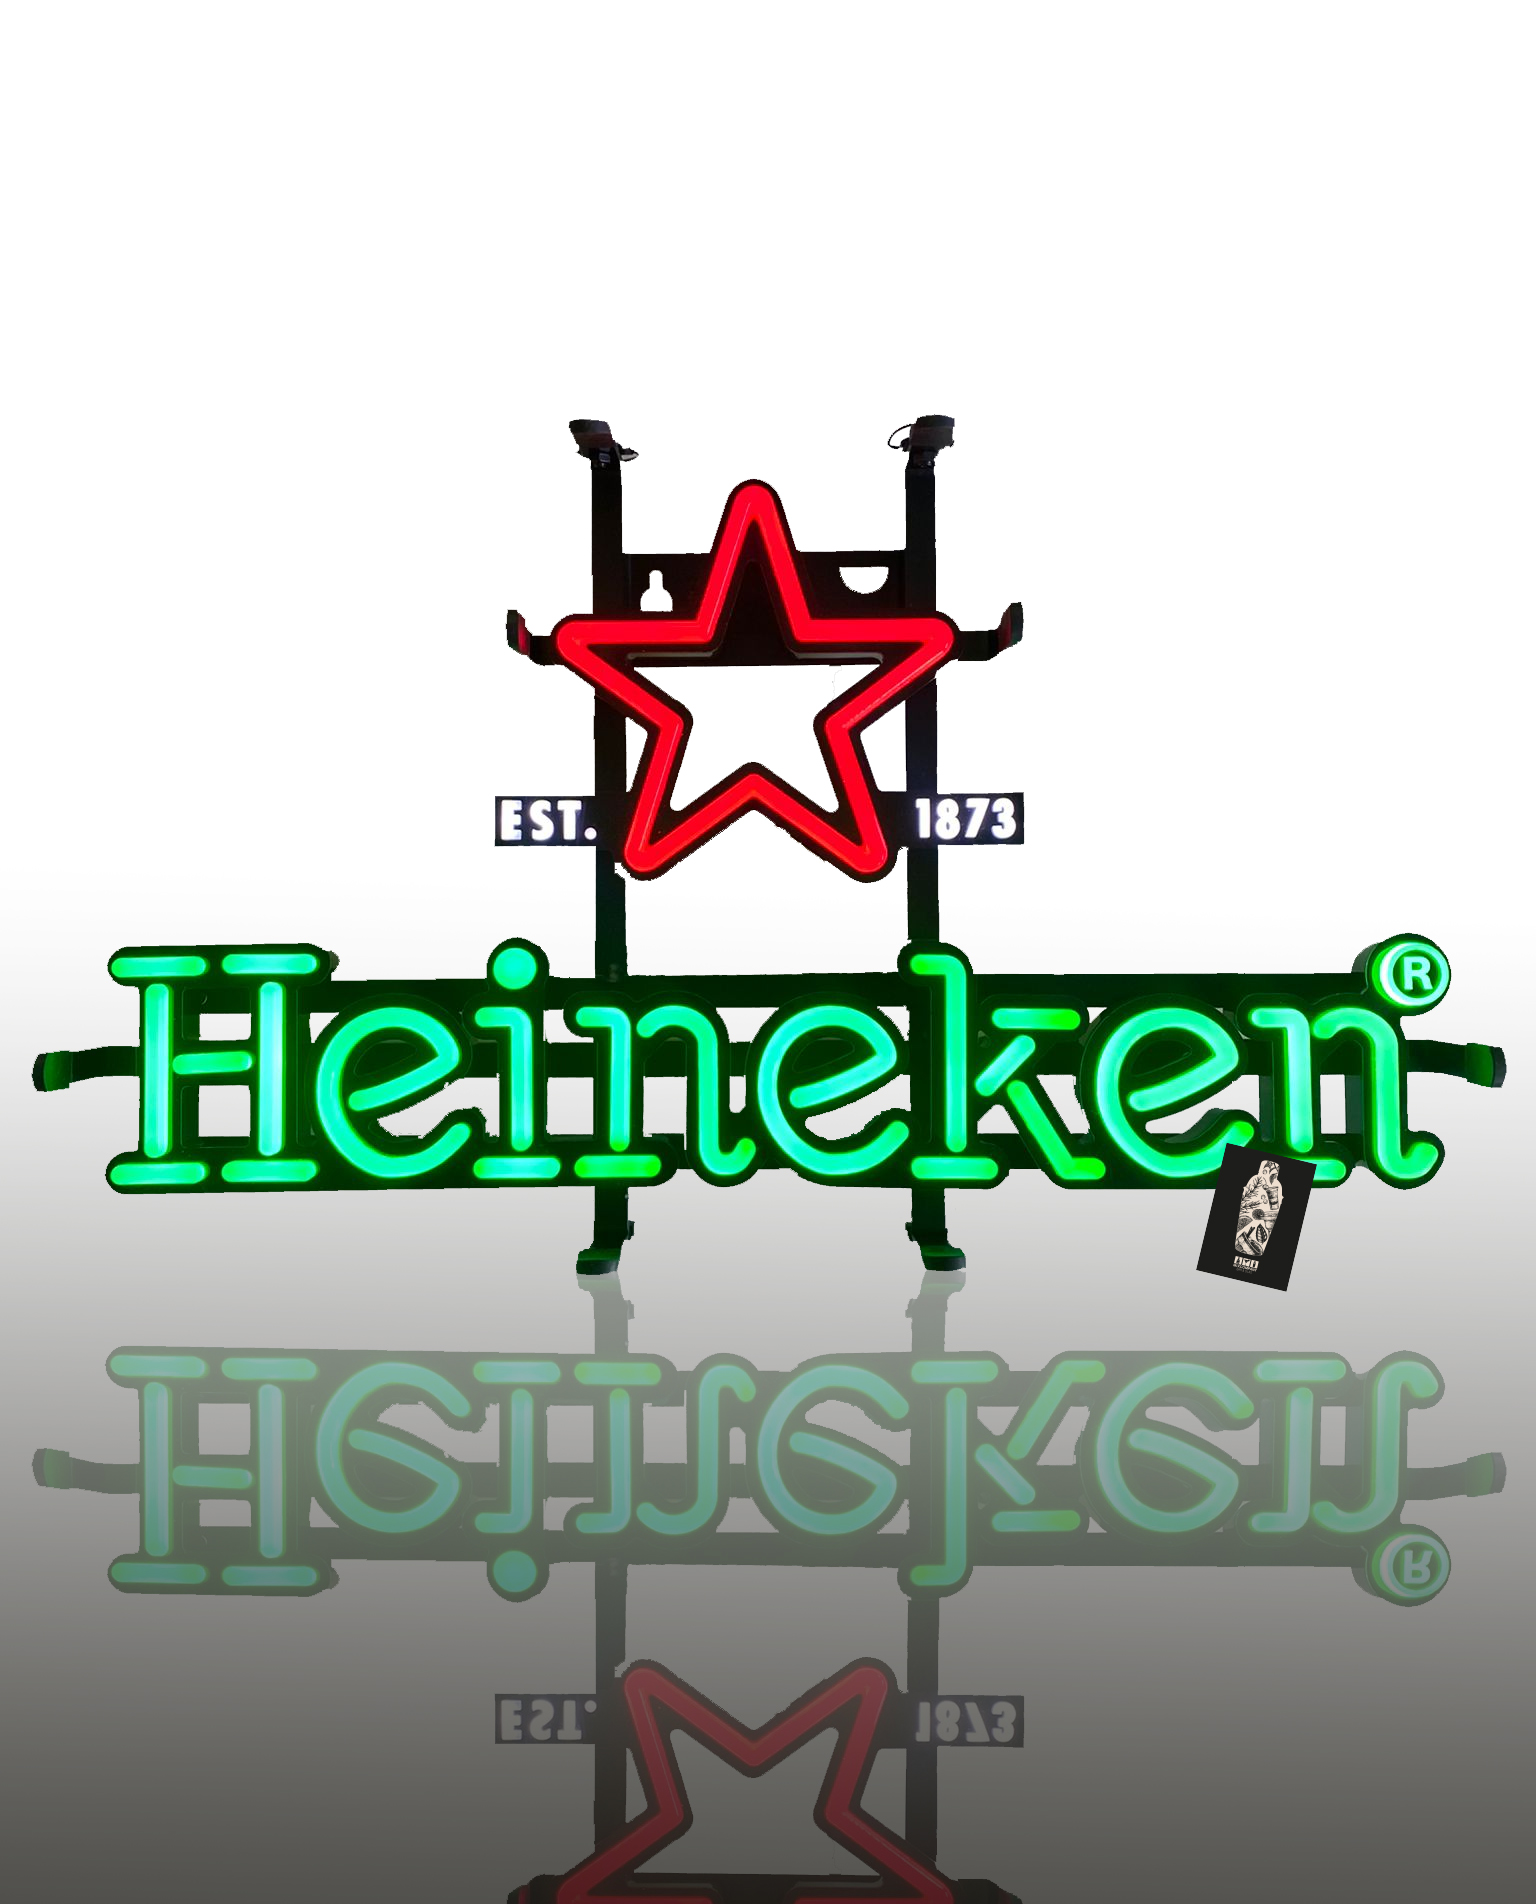 Heineken LED Werbeschild Werbetafel Leuchtreklame Leuchtschild Maße ca. 44 x 26cm ink. Netzteil+Kette zum aufhängen inkl. Mixcompany Postkarte